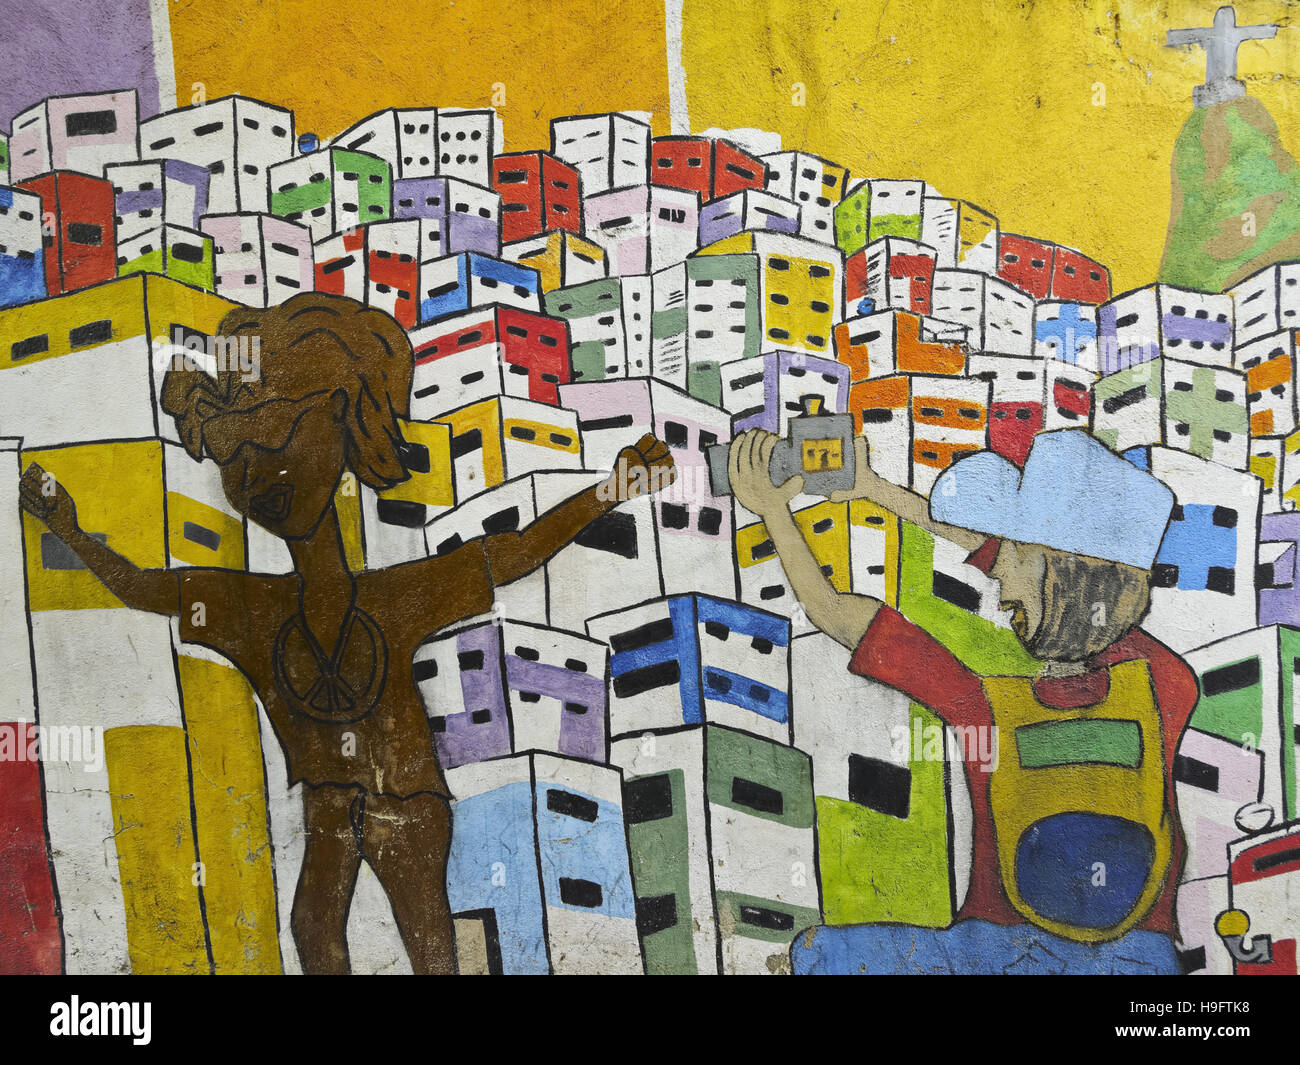 Brésil, Rio de Janeiro, la peinture murale à l'intérieur de la Favela Santa Marta. Banque D'Images